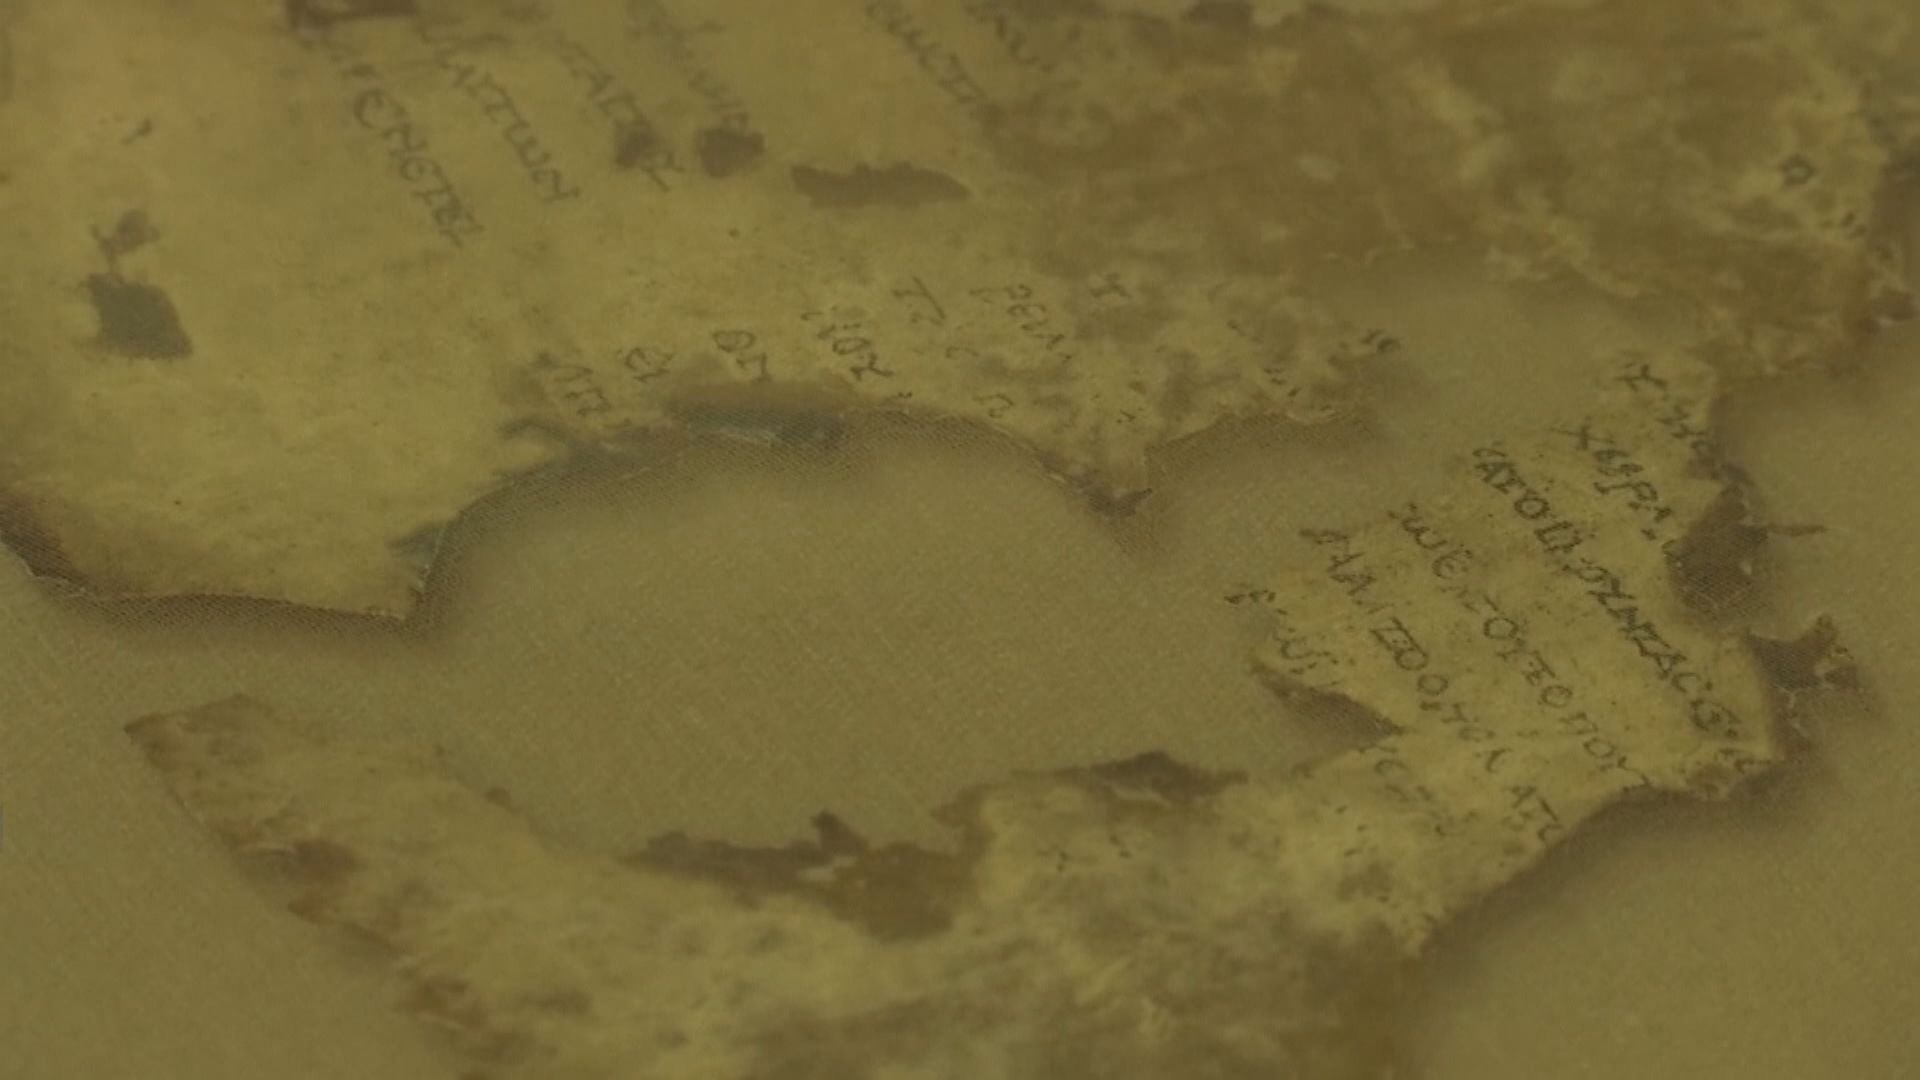 【環球薈報】相隔逾半世紀再發現死海古卷殘片